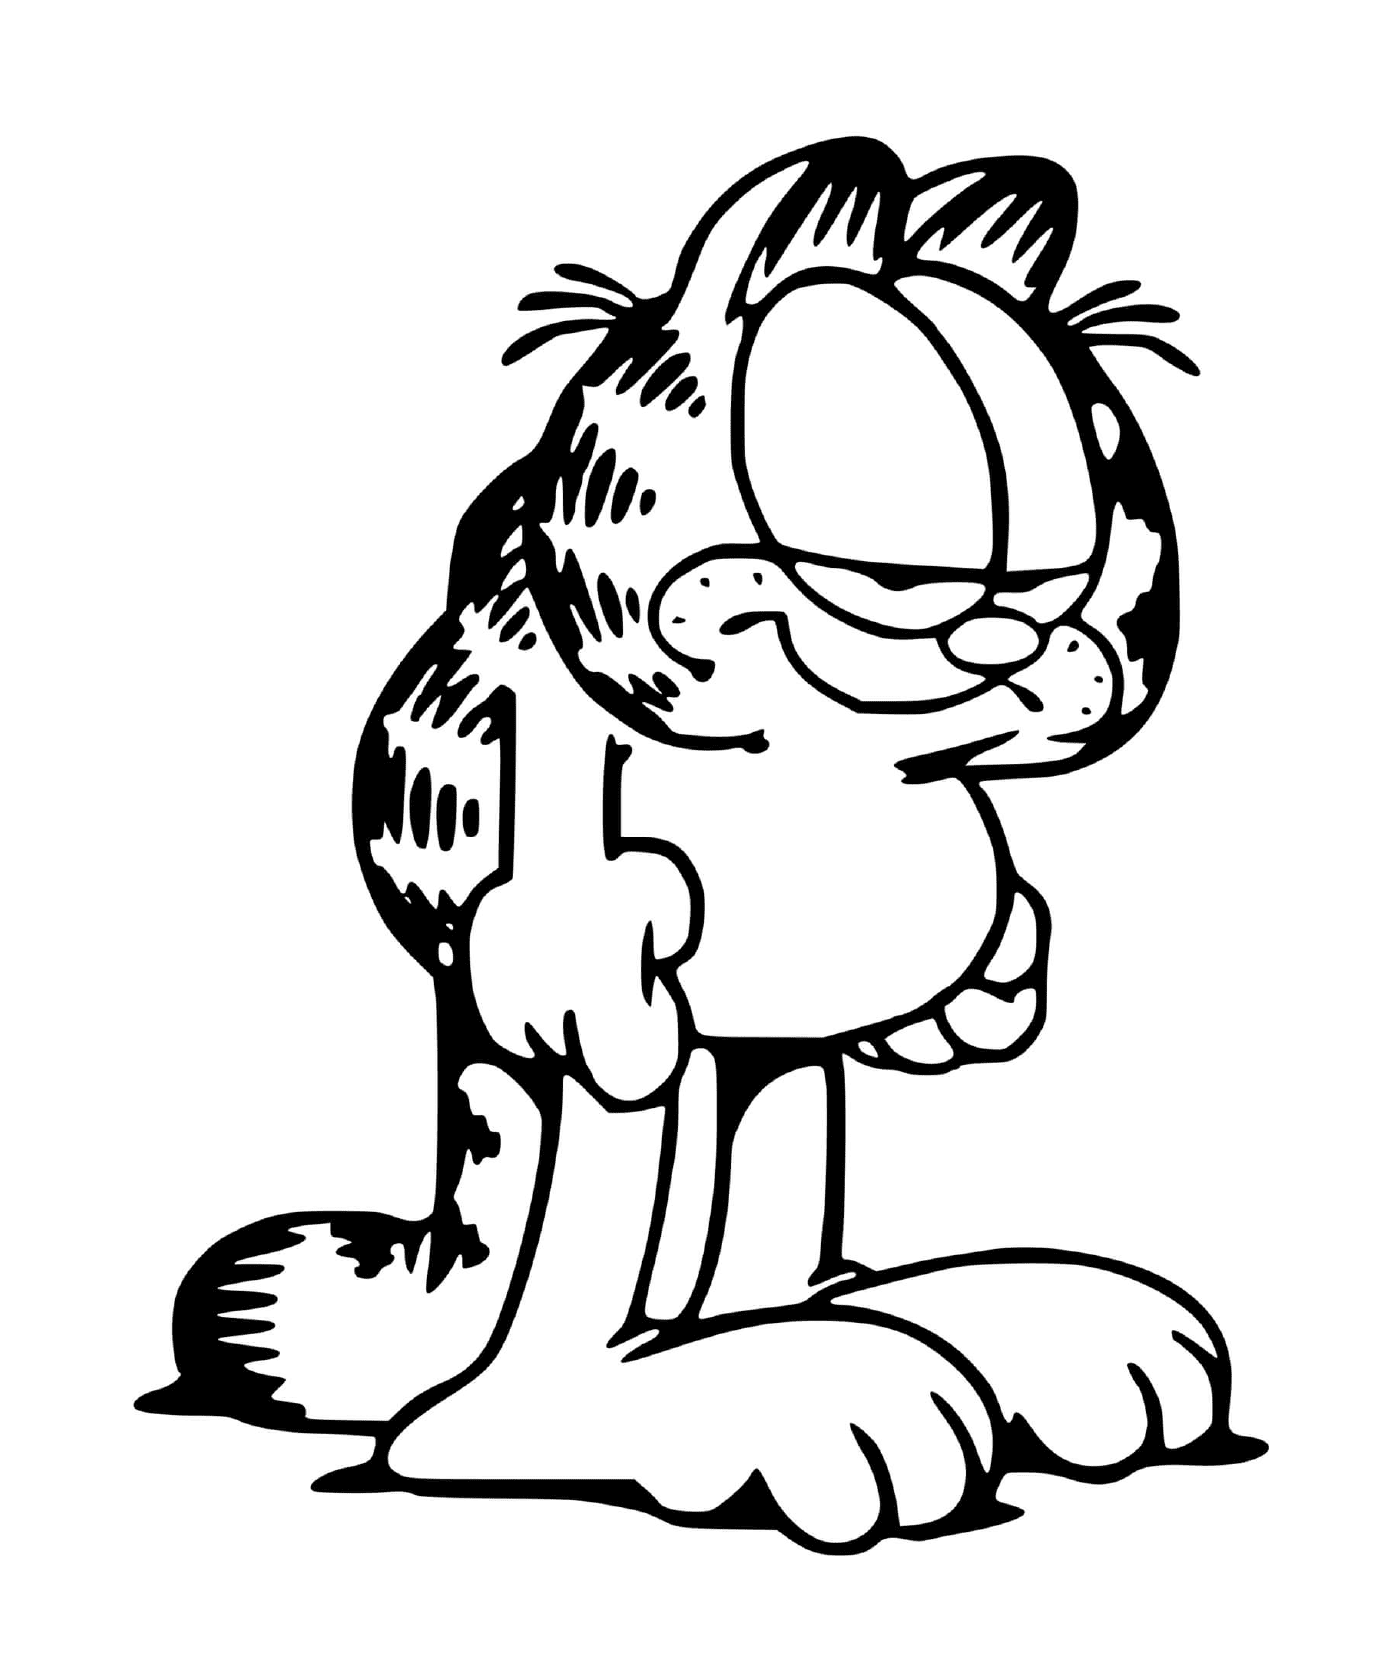  Garfield immer müde und erschöpft 